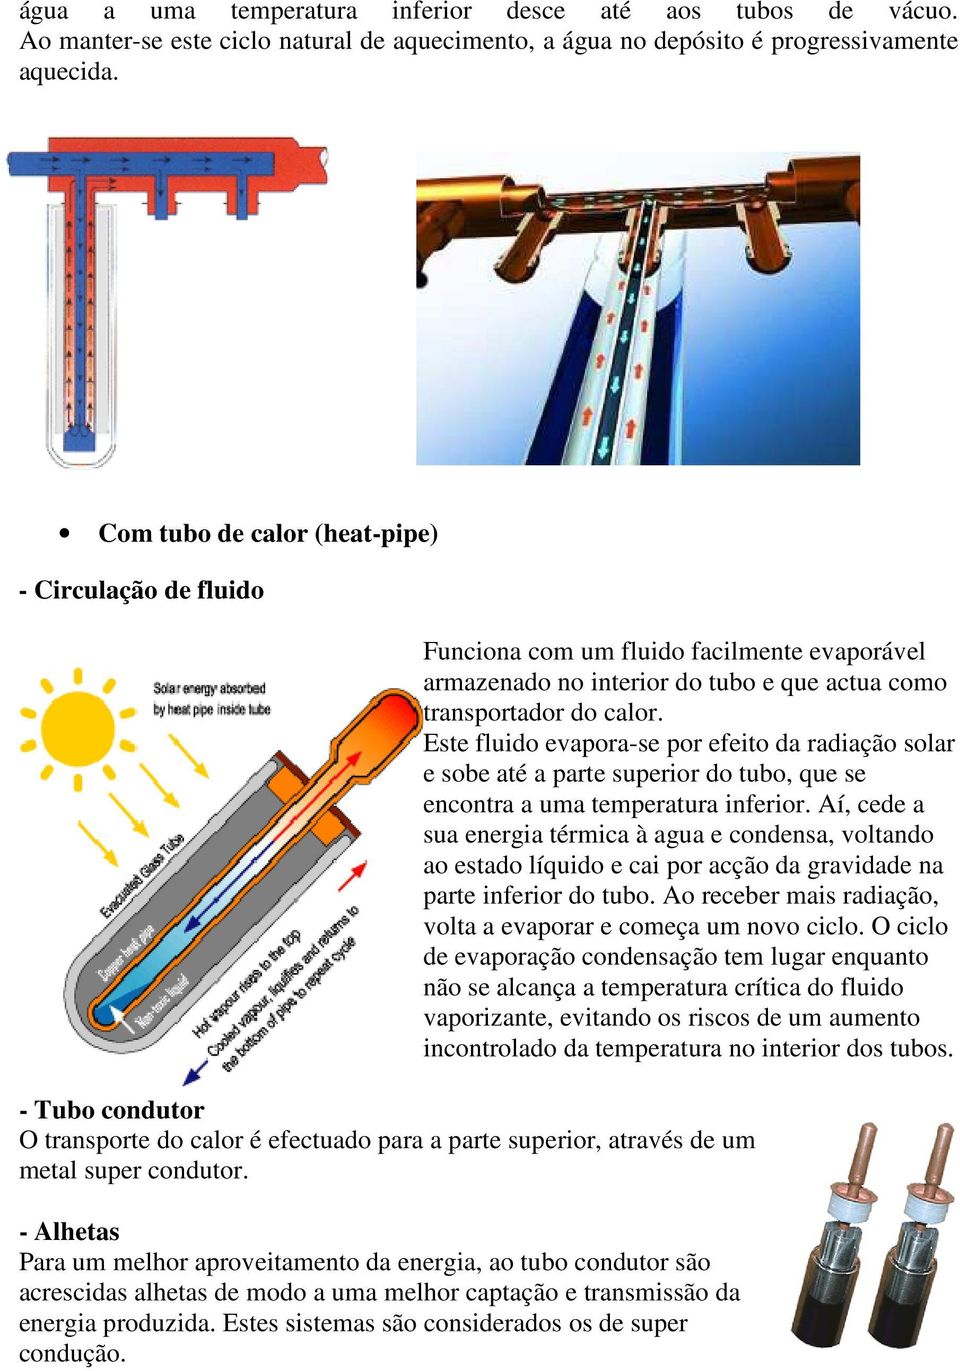 Este fluido evapora-se por efeito da radiação solar e sobe até a parte superior do tubo, que se encontra a uma temperatura inferior.